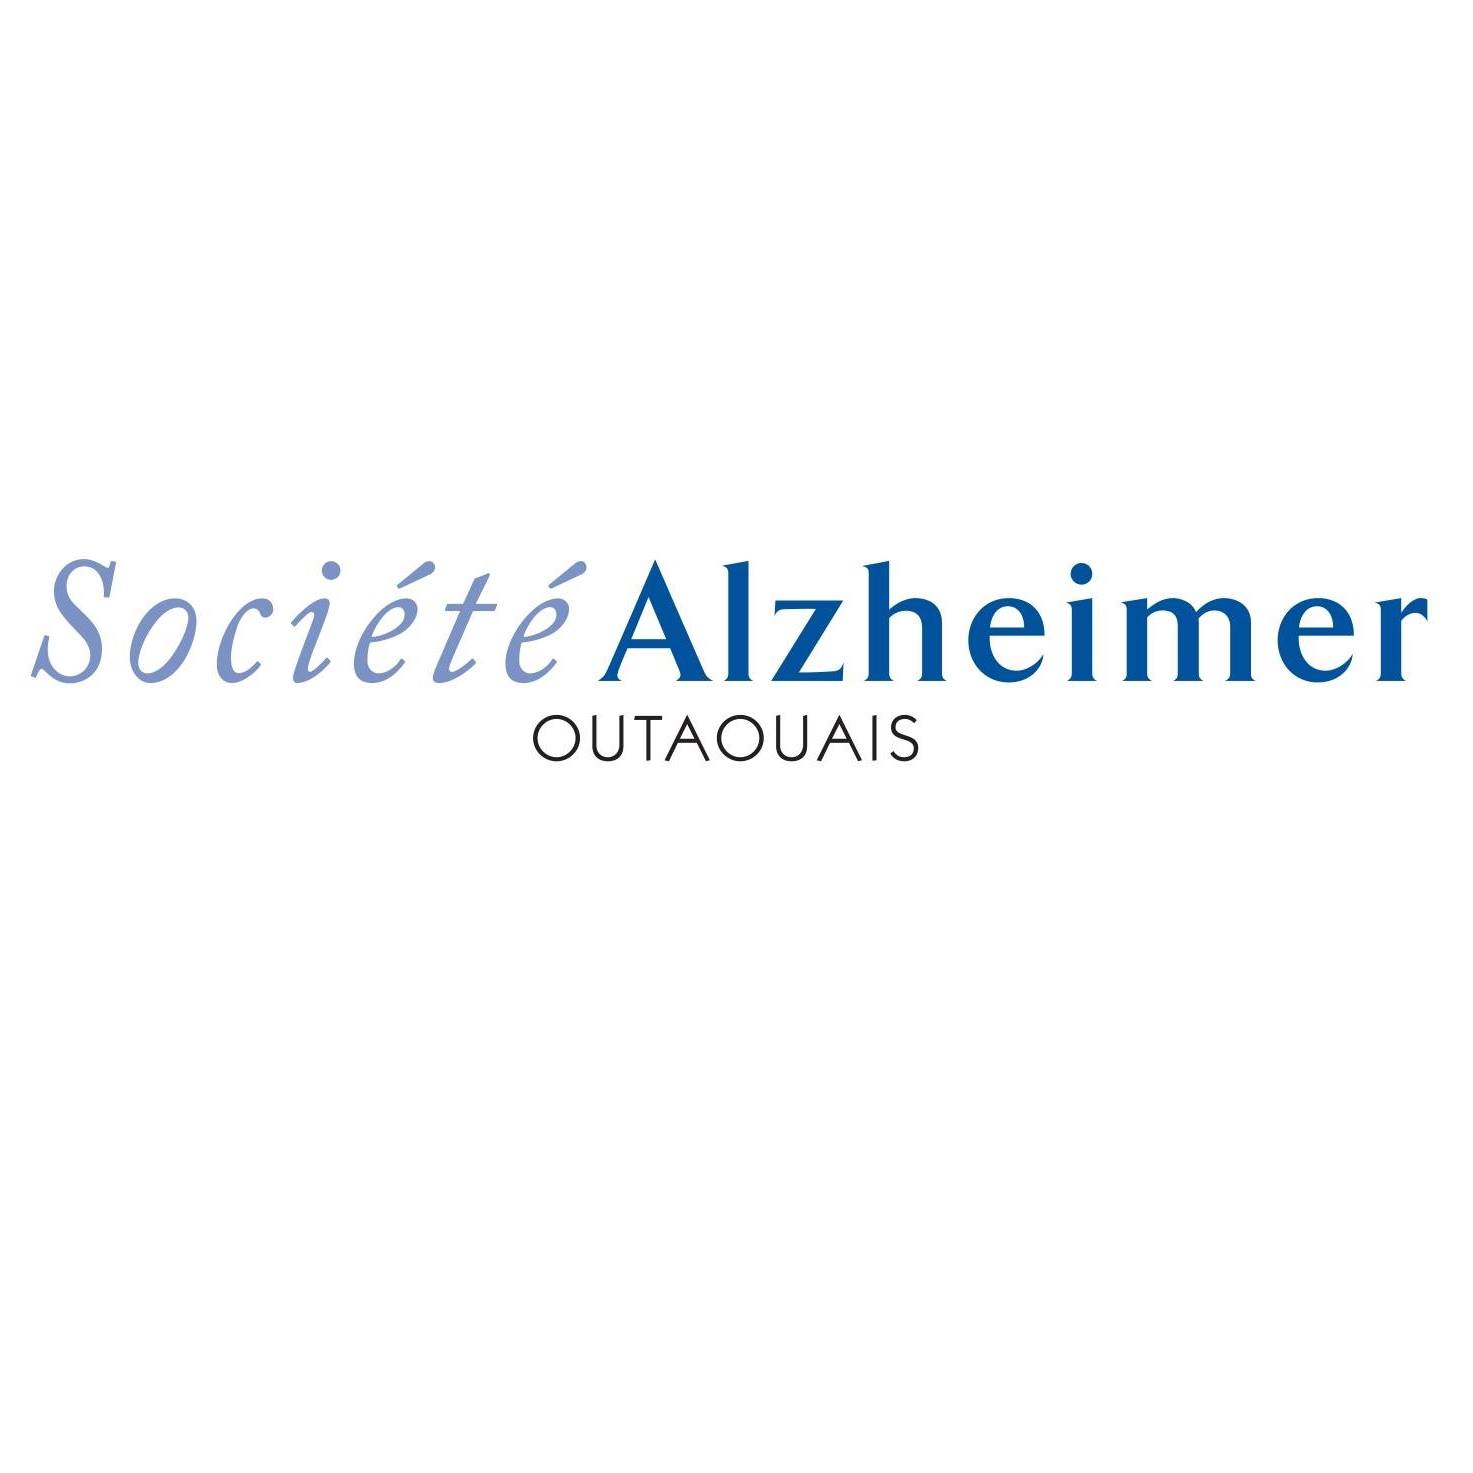 Alzheimer_Outaouais.jpg - 38,36 kB